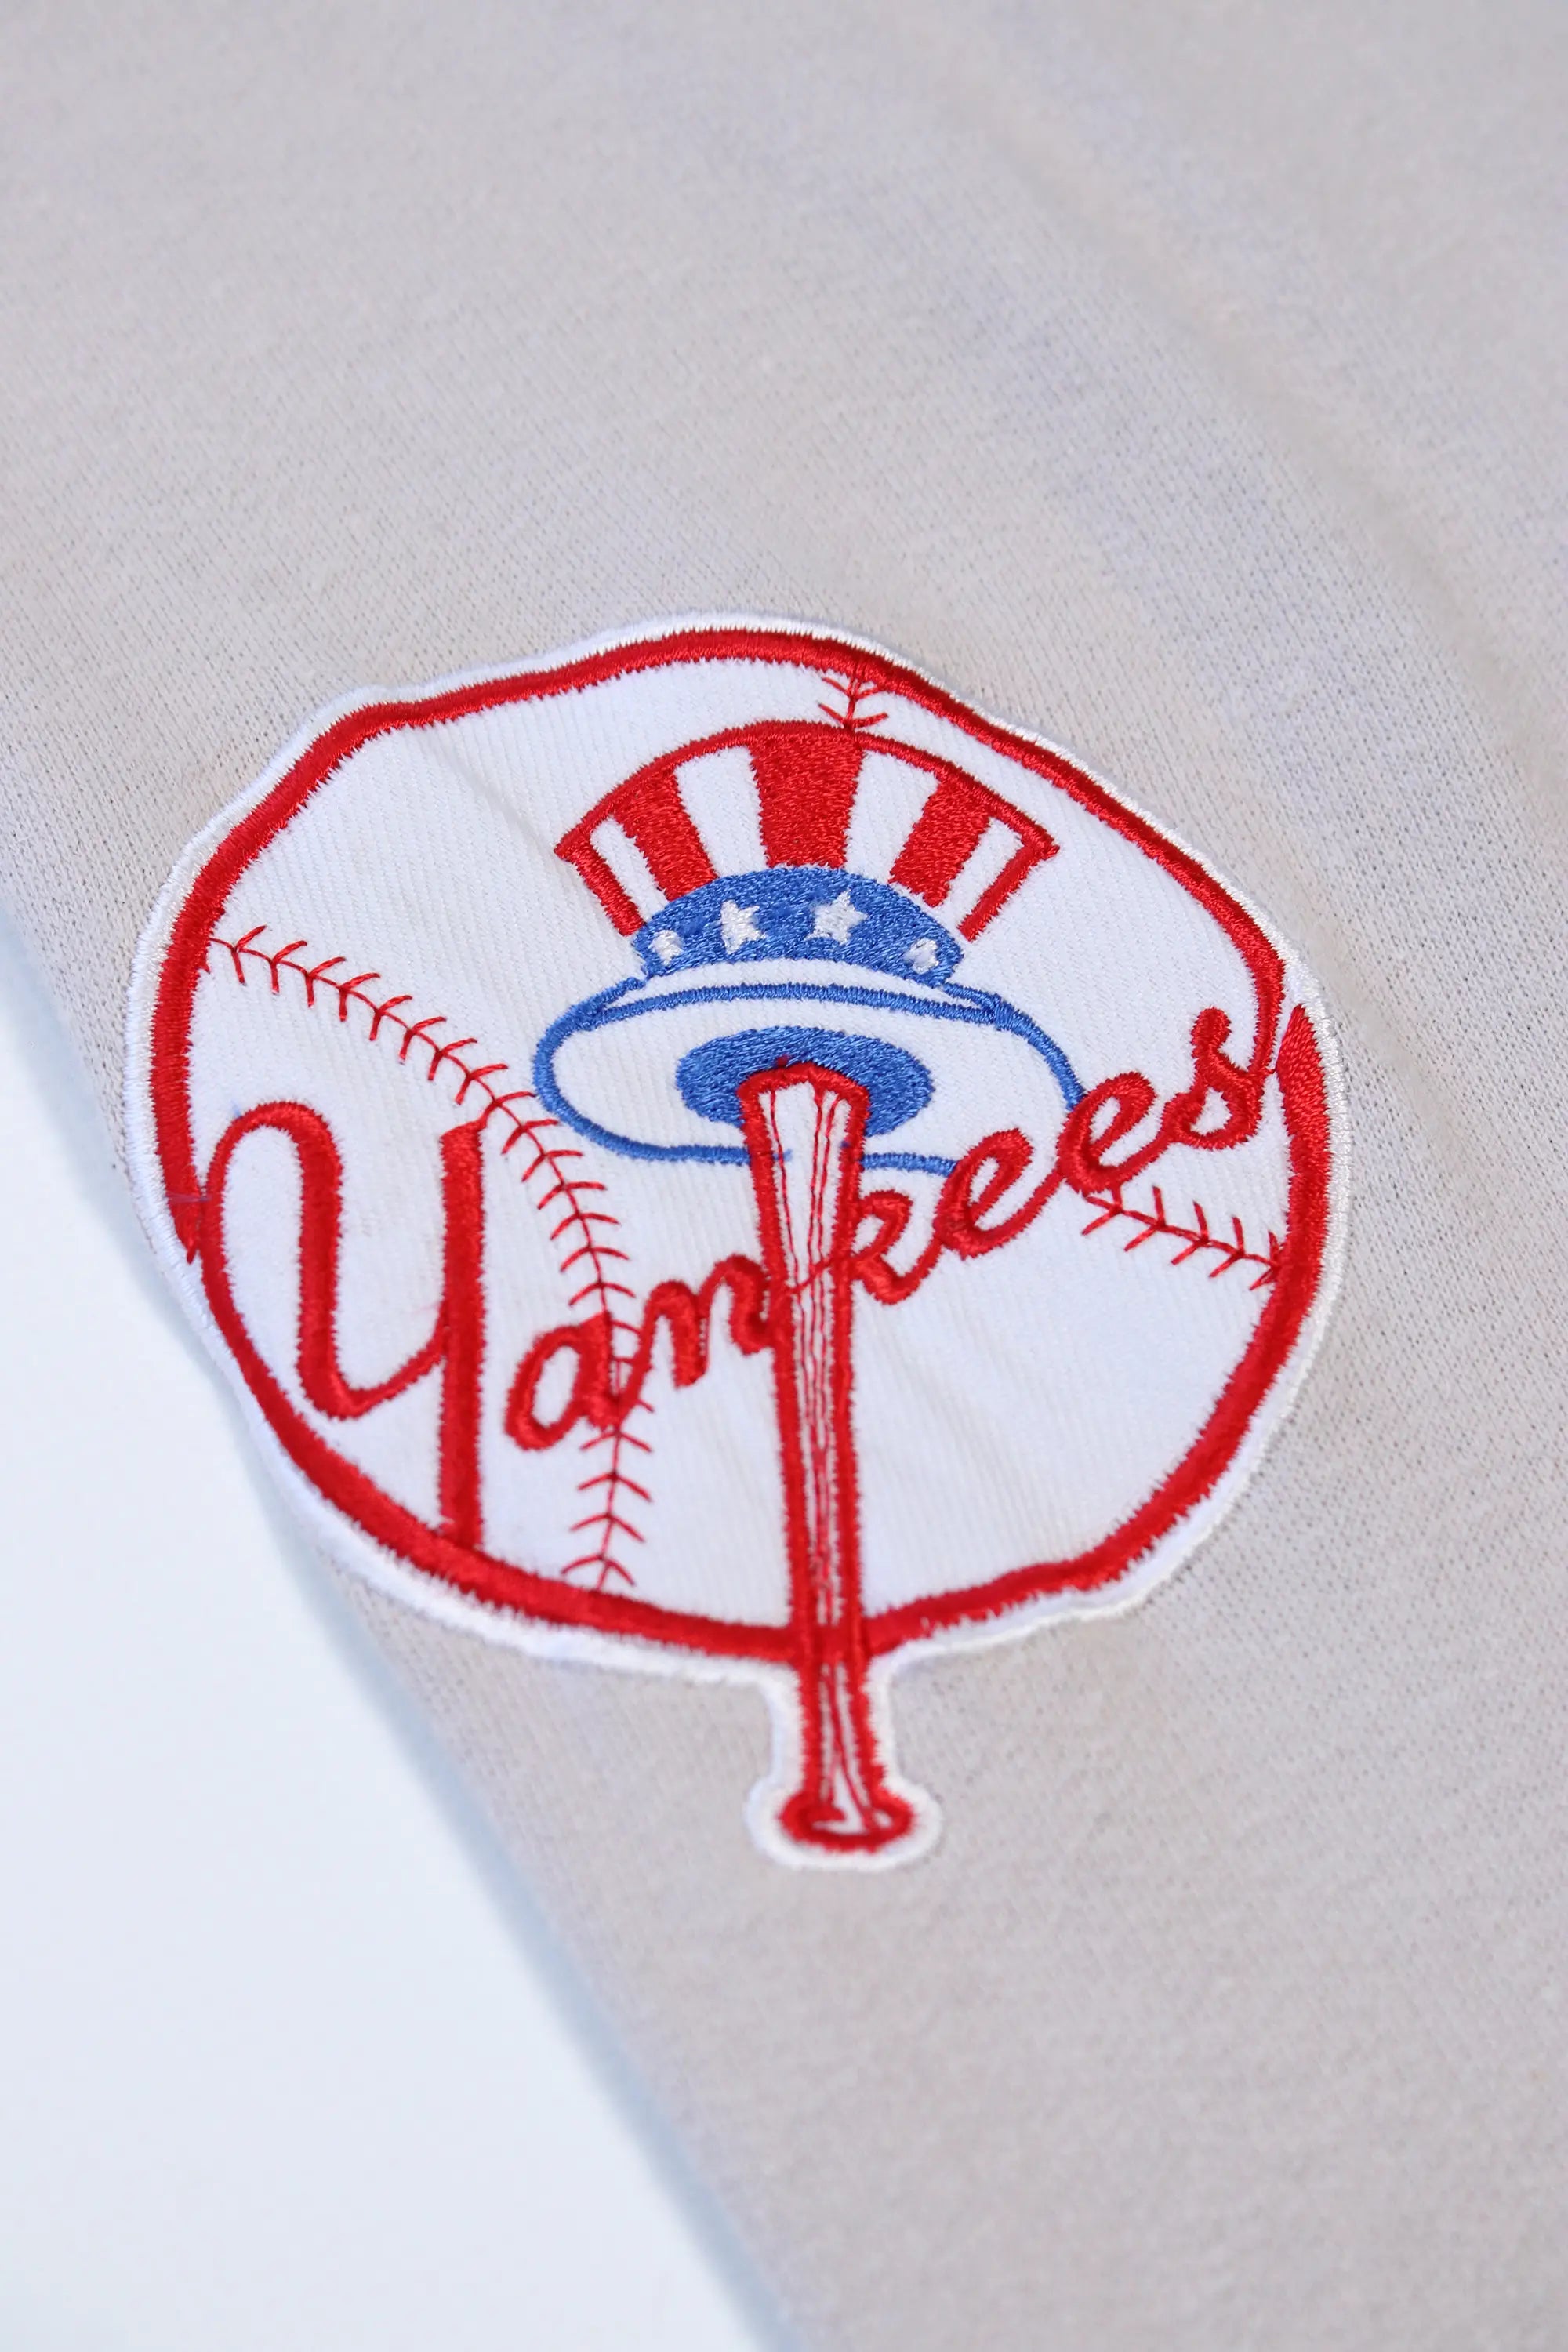 NY Yankees Hoodie